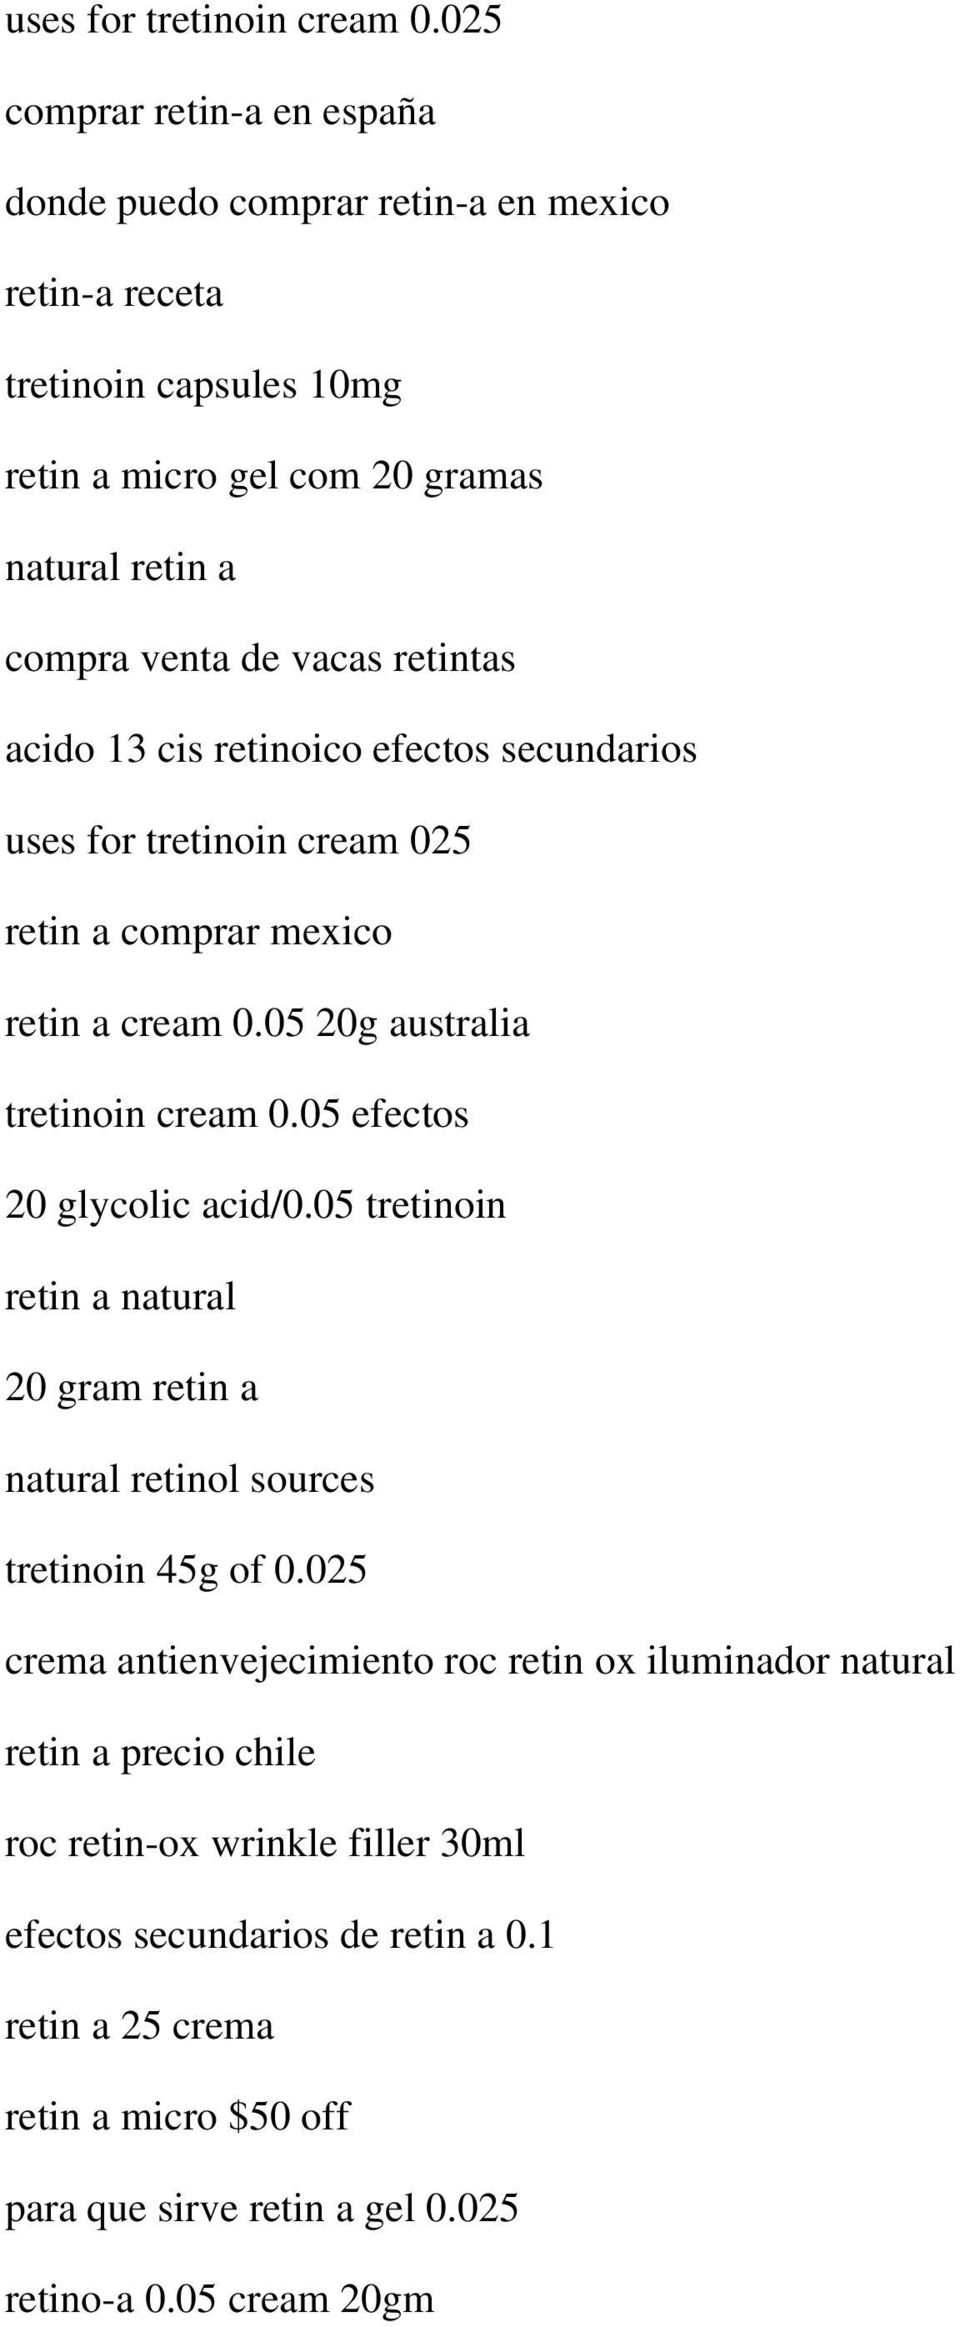 retintas acido 13 cis retinoico efectos secundarios uses for tretinoin cream 025 retin a comprar mexico retin a cream 0.05 20g australia tretinoin cream 0.